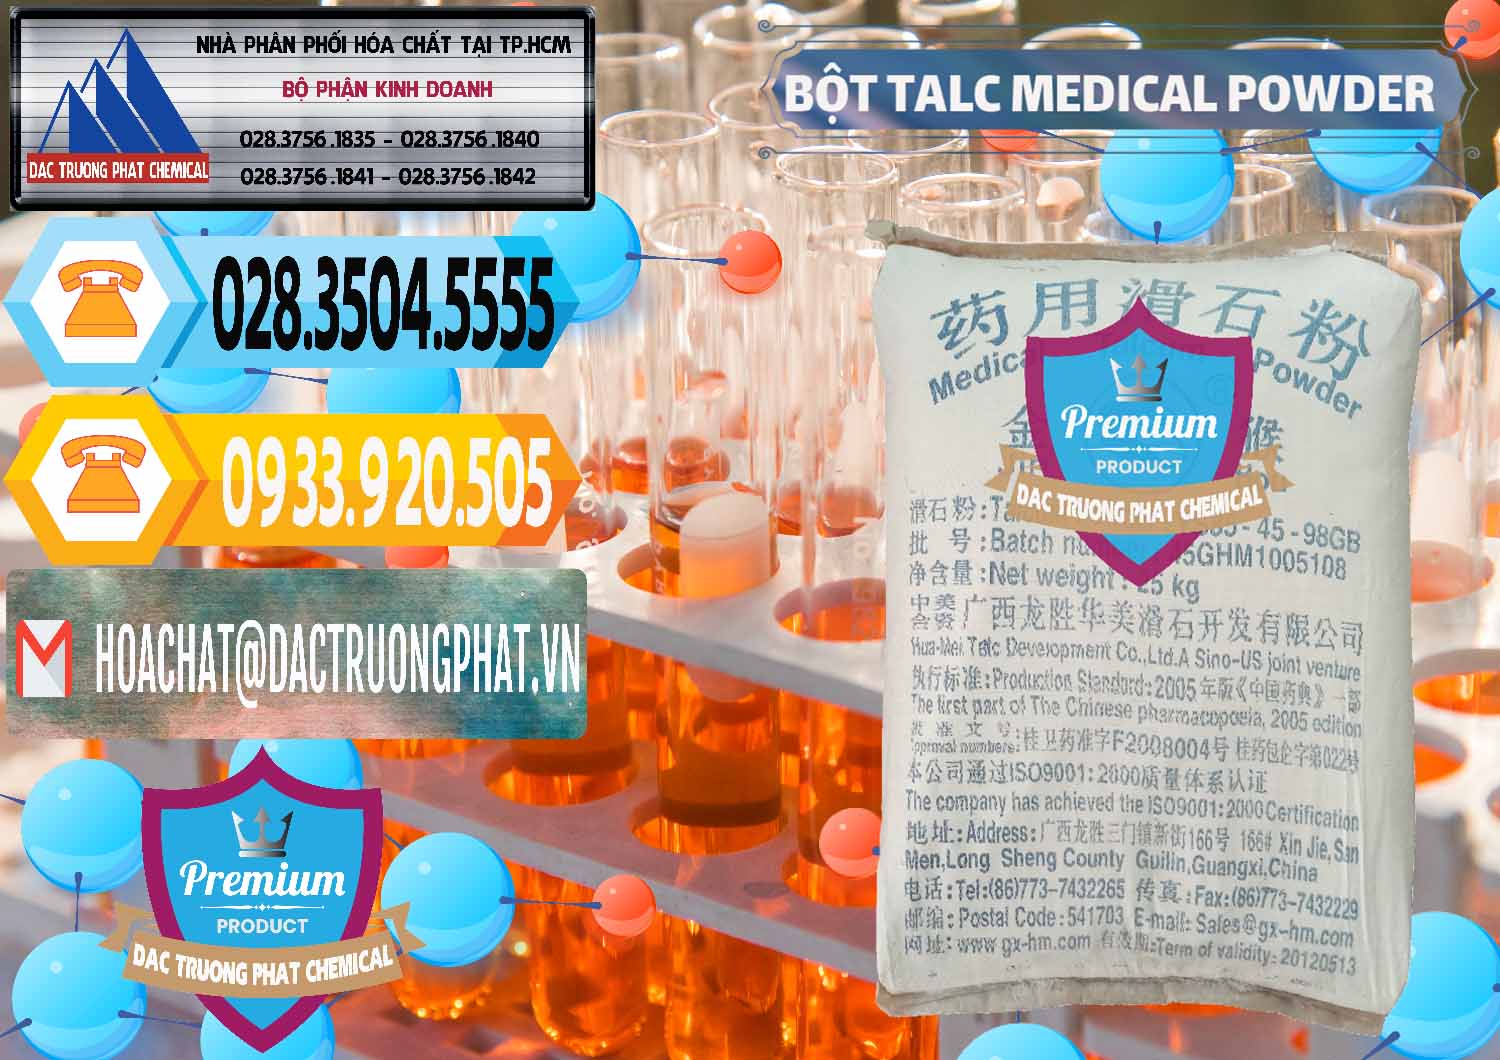 Nơi cung ứng & bán Bột Talc Medical Powder Trung Quốc China - 0036 - Nơi nhập khẩu và cung cấp hóa chất tại TP.HCM - hoachattayrua.net